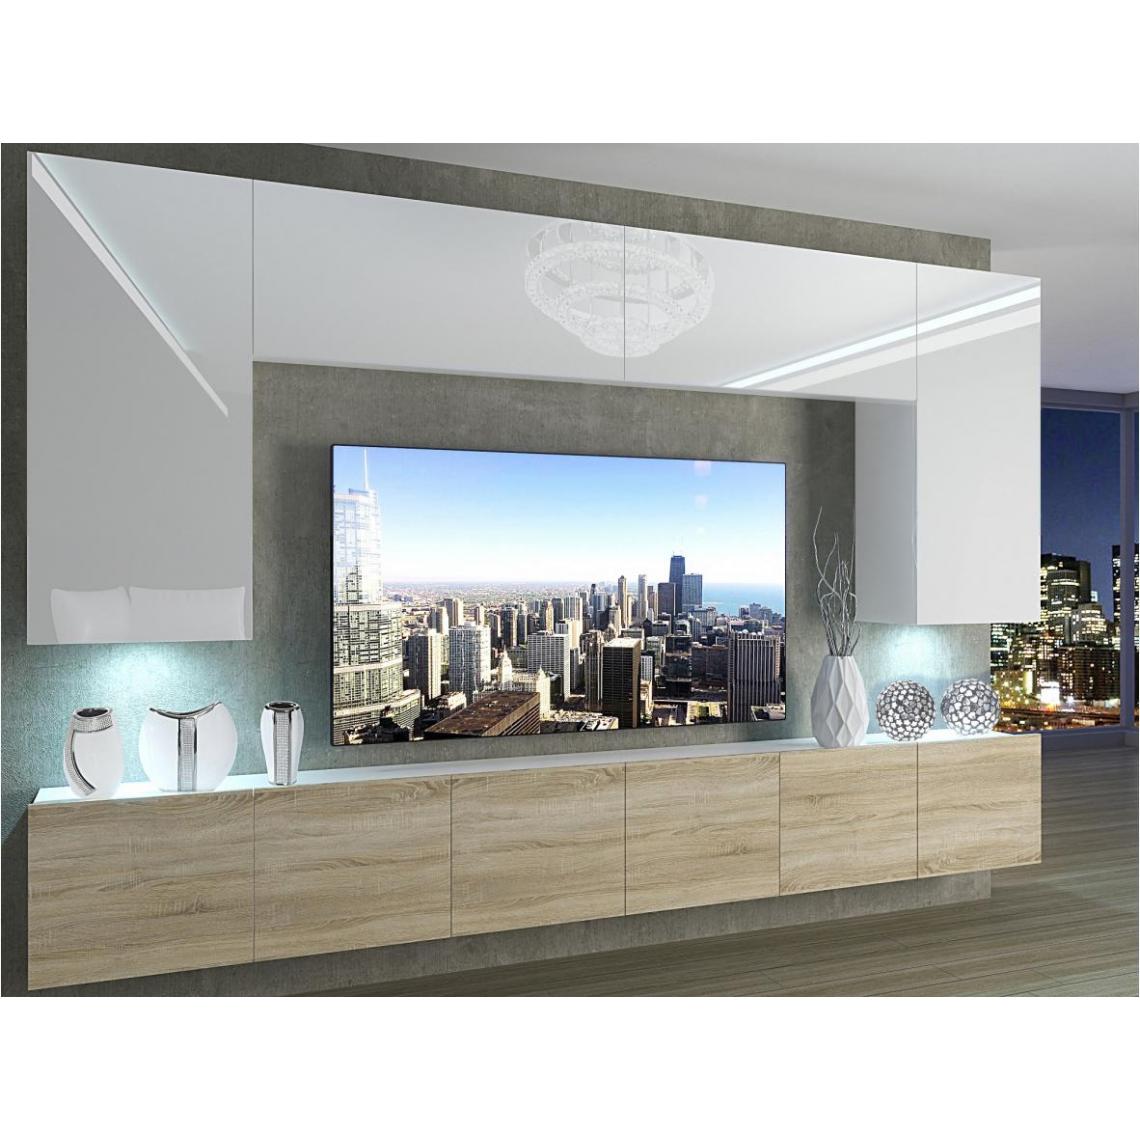 Hucoco - SILLEA - Ensemble meubles TV + LED - Unité murale style moderne - Largeur 300 cm - Mur TV à suspendre - Blanc/Sonoma - Meubles TV, Hi-Fi